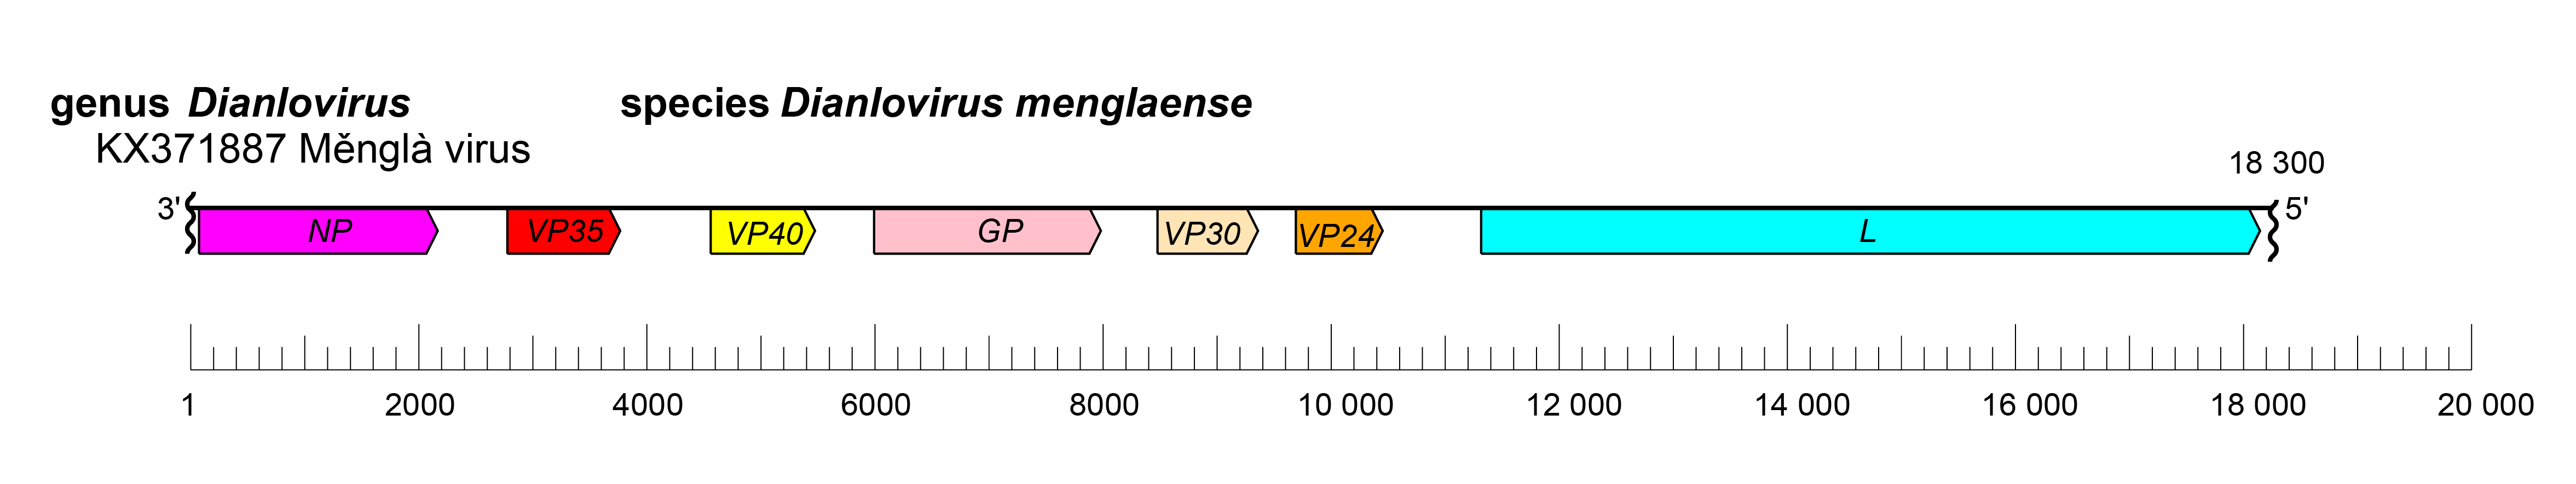 Dianlovirus genome